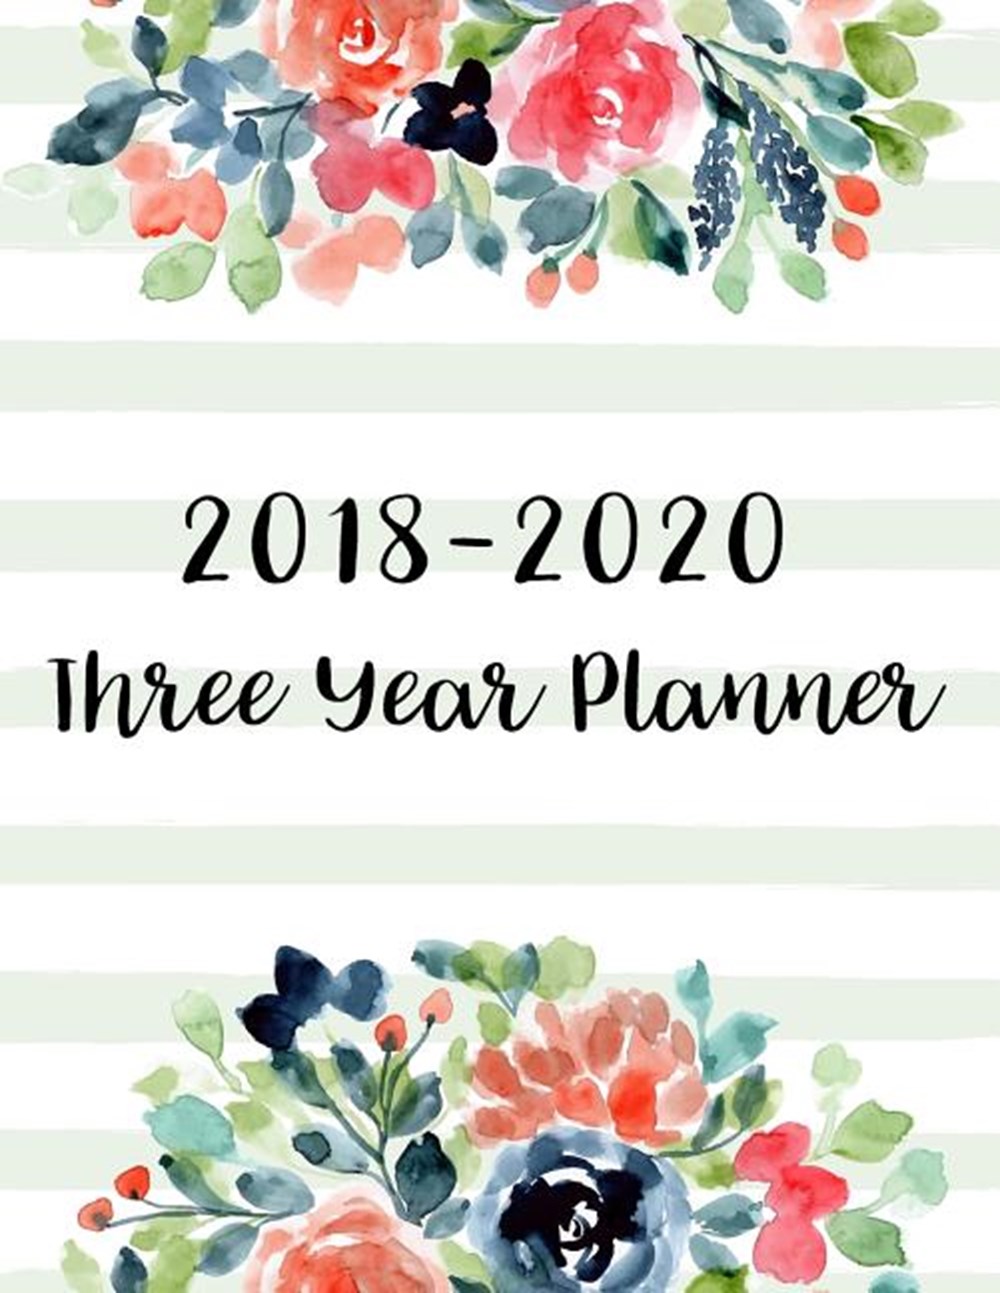 2018-2020 Three Year Planner 36 Months Calendar Yearly Goals Monthly Task Checklist Organizer Agenda